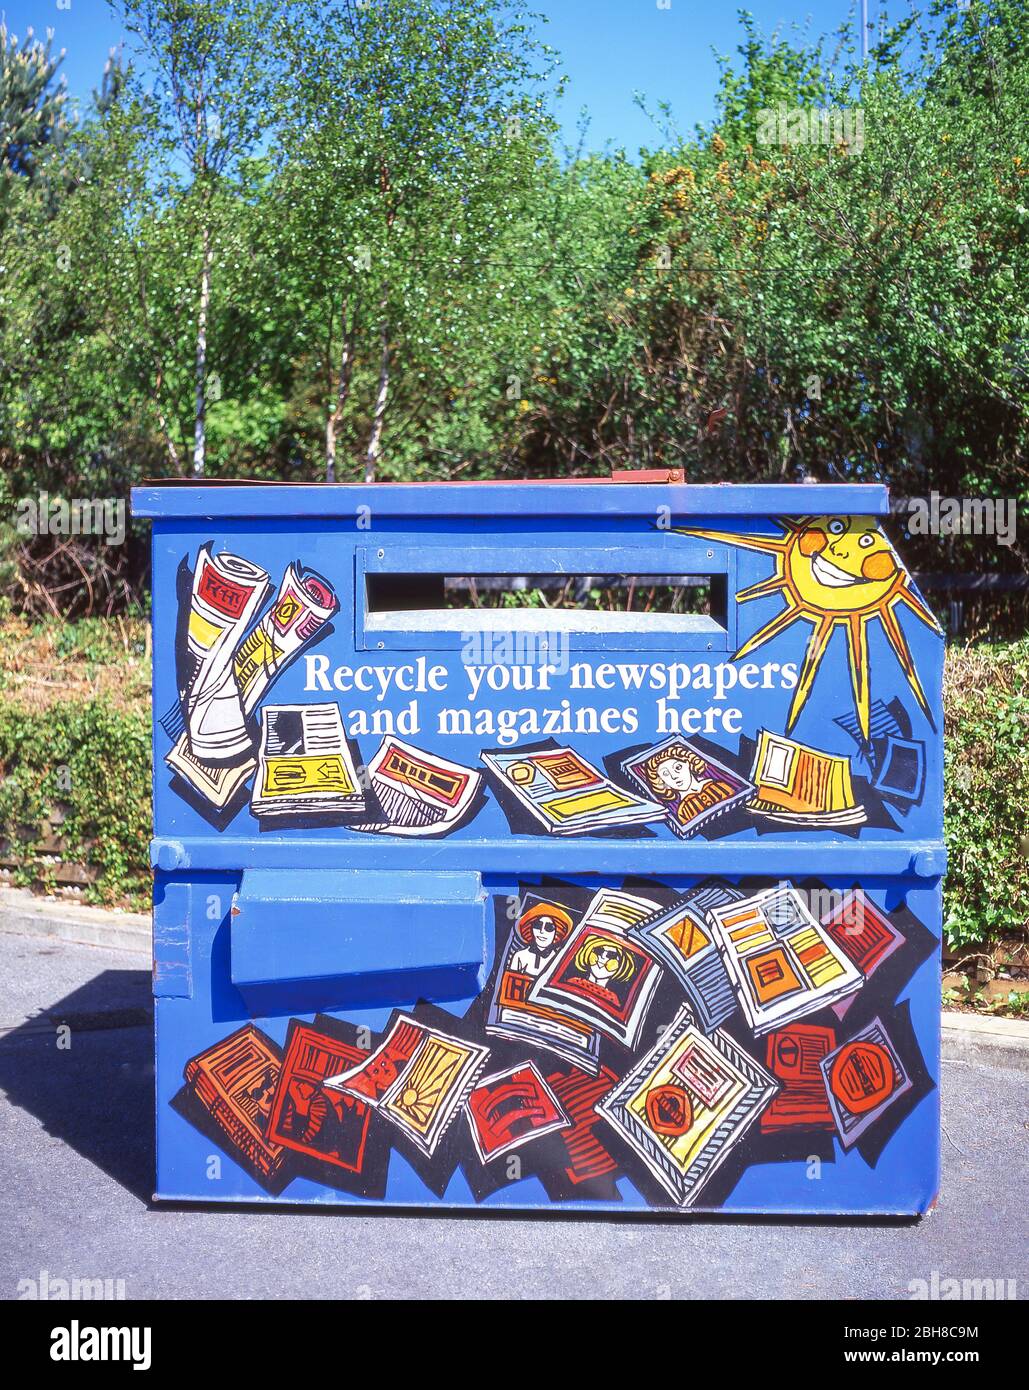 Corbeille de recyclage des journaux et des magazines, London Borough, de Richmond upon Thames, Greater London, Angleterre, Royaume-Uni Banque D'Images